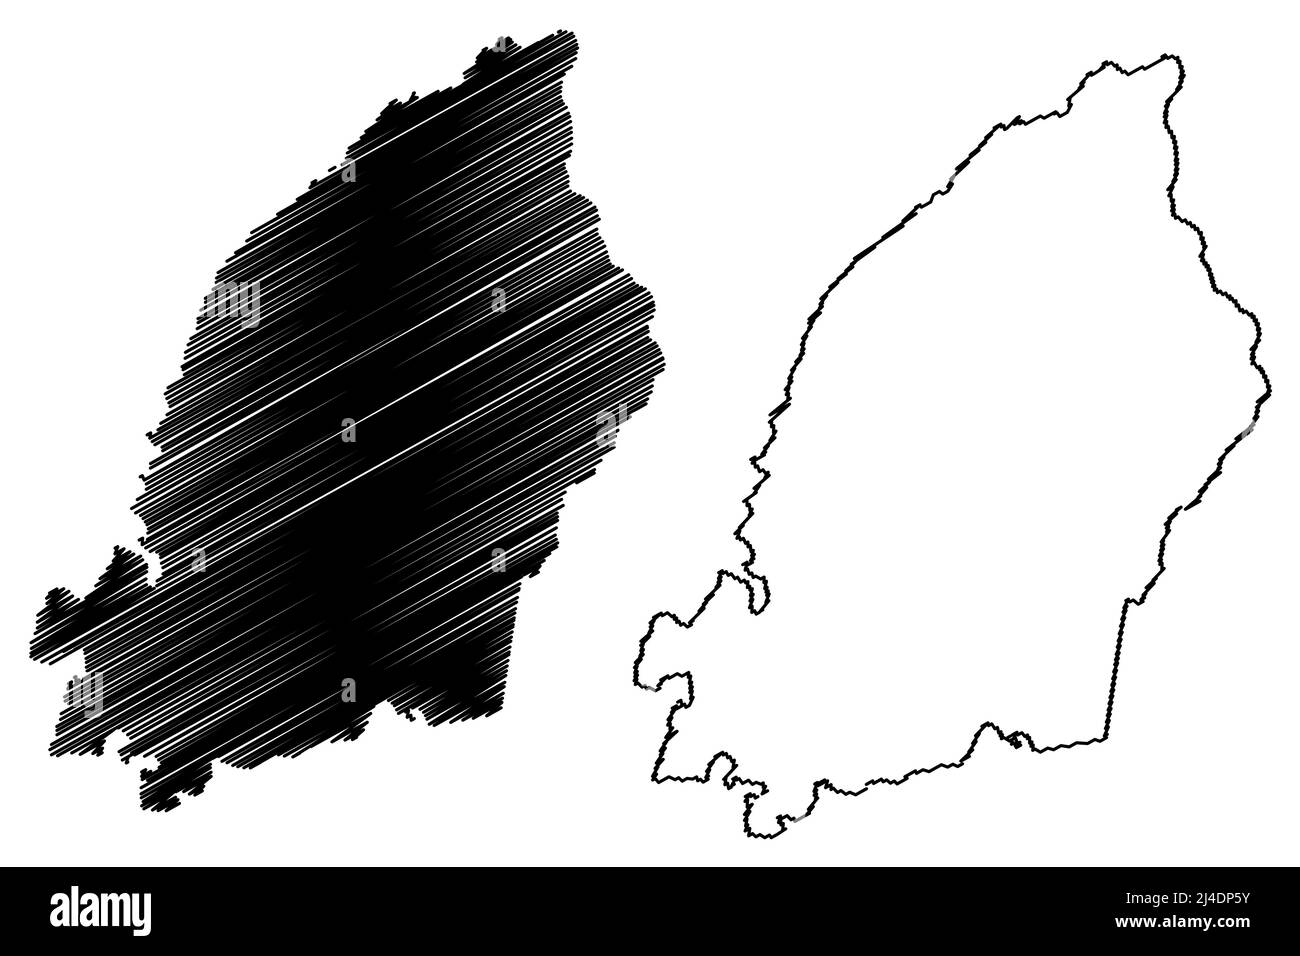 Stortervolandet island (Republic of Finland) map vector illustration, scribble sketch Stortervolandet map Stock Vector